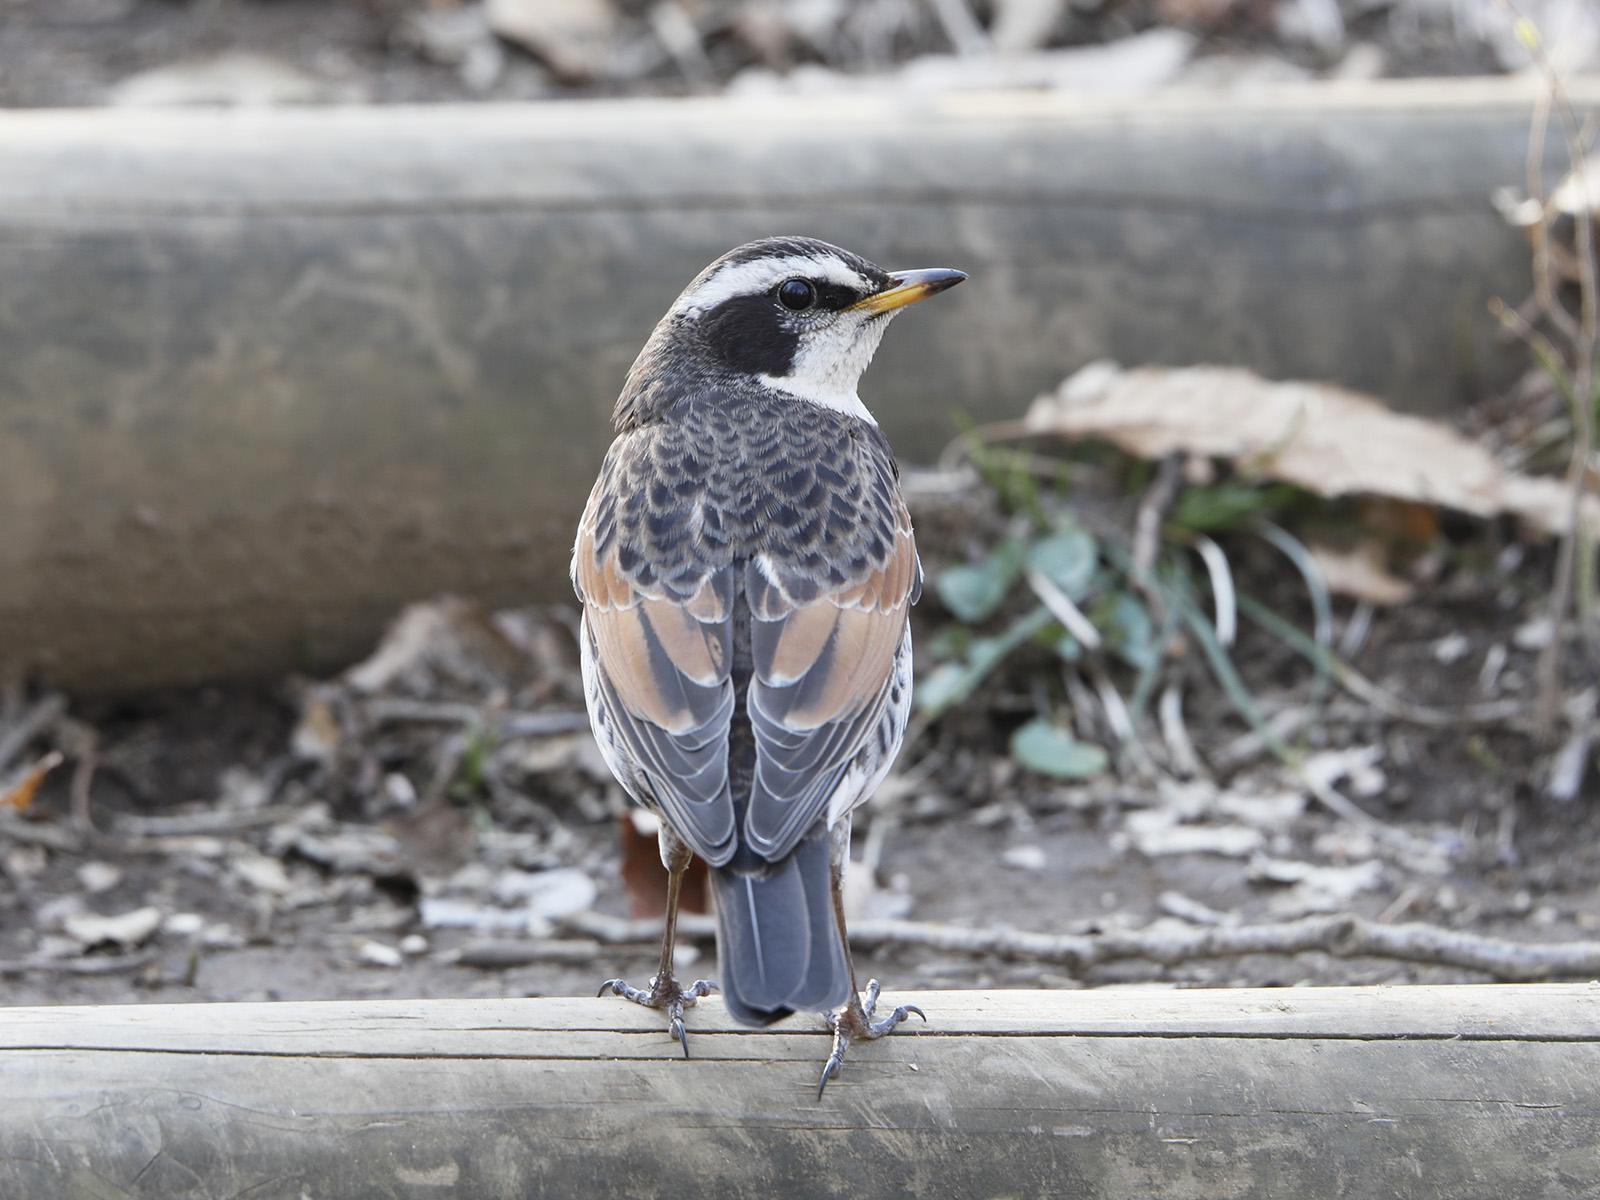 鳥の名前を調べるコツ プロが教える 野鳥の見わけ方 3ポイント サライ Jp 小学館の雑誌 サライ 公式サイト